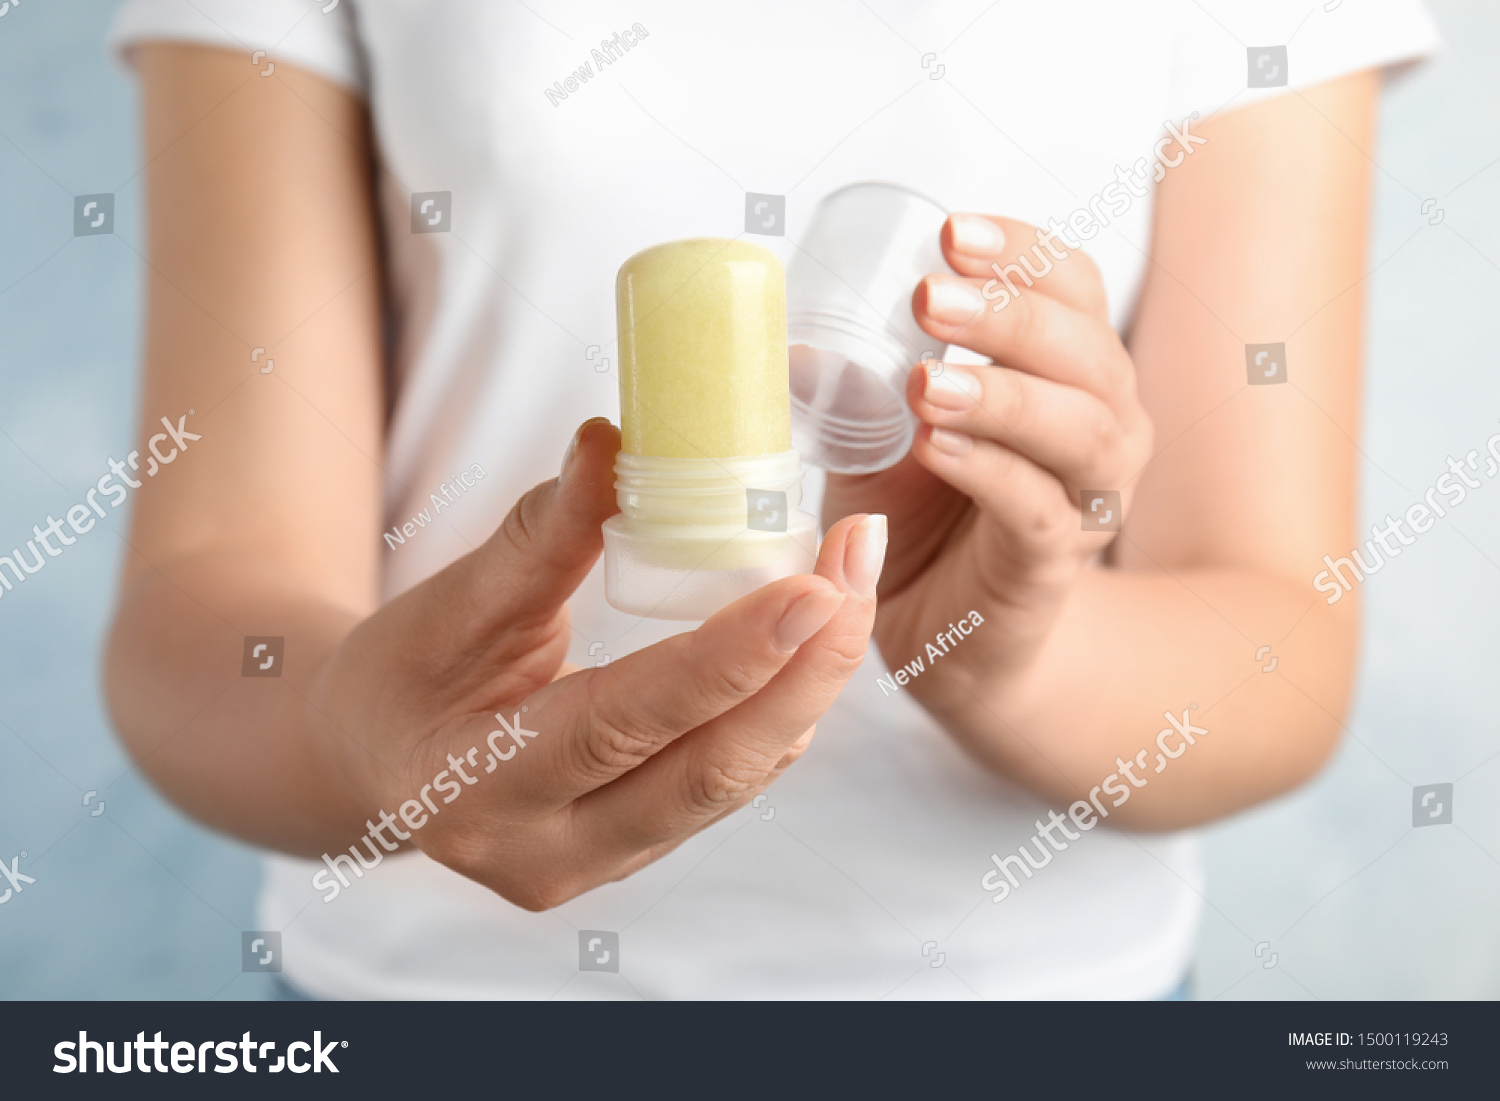 Young woman holding natural crystal alum stick deodorant, closeup #1500119243